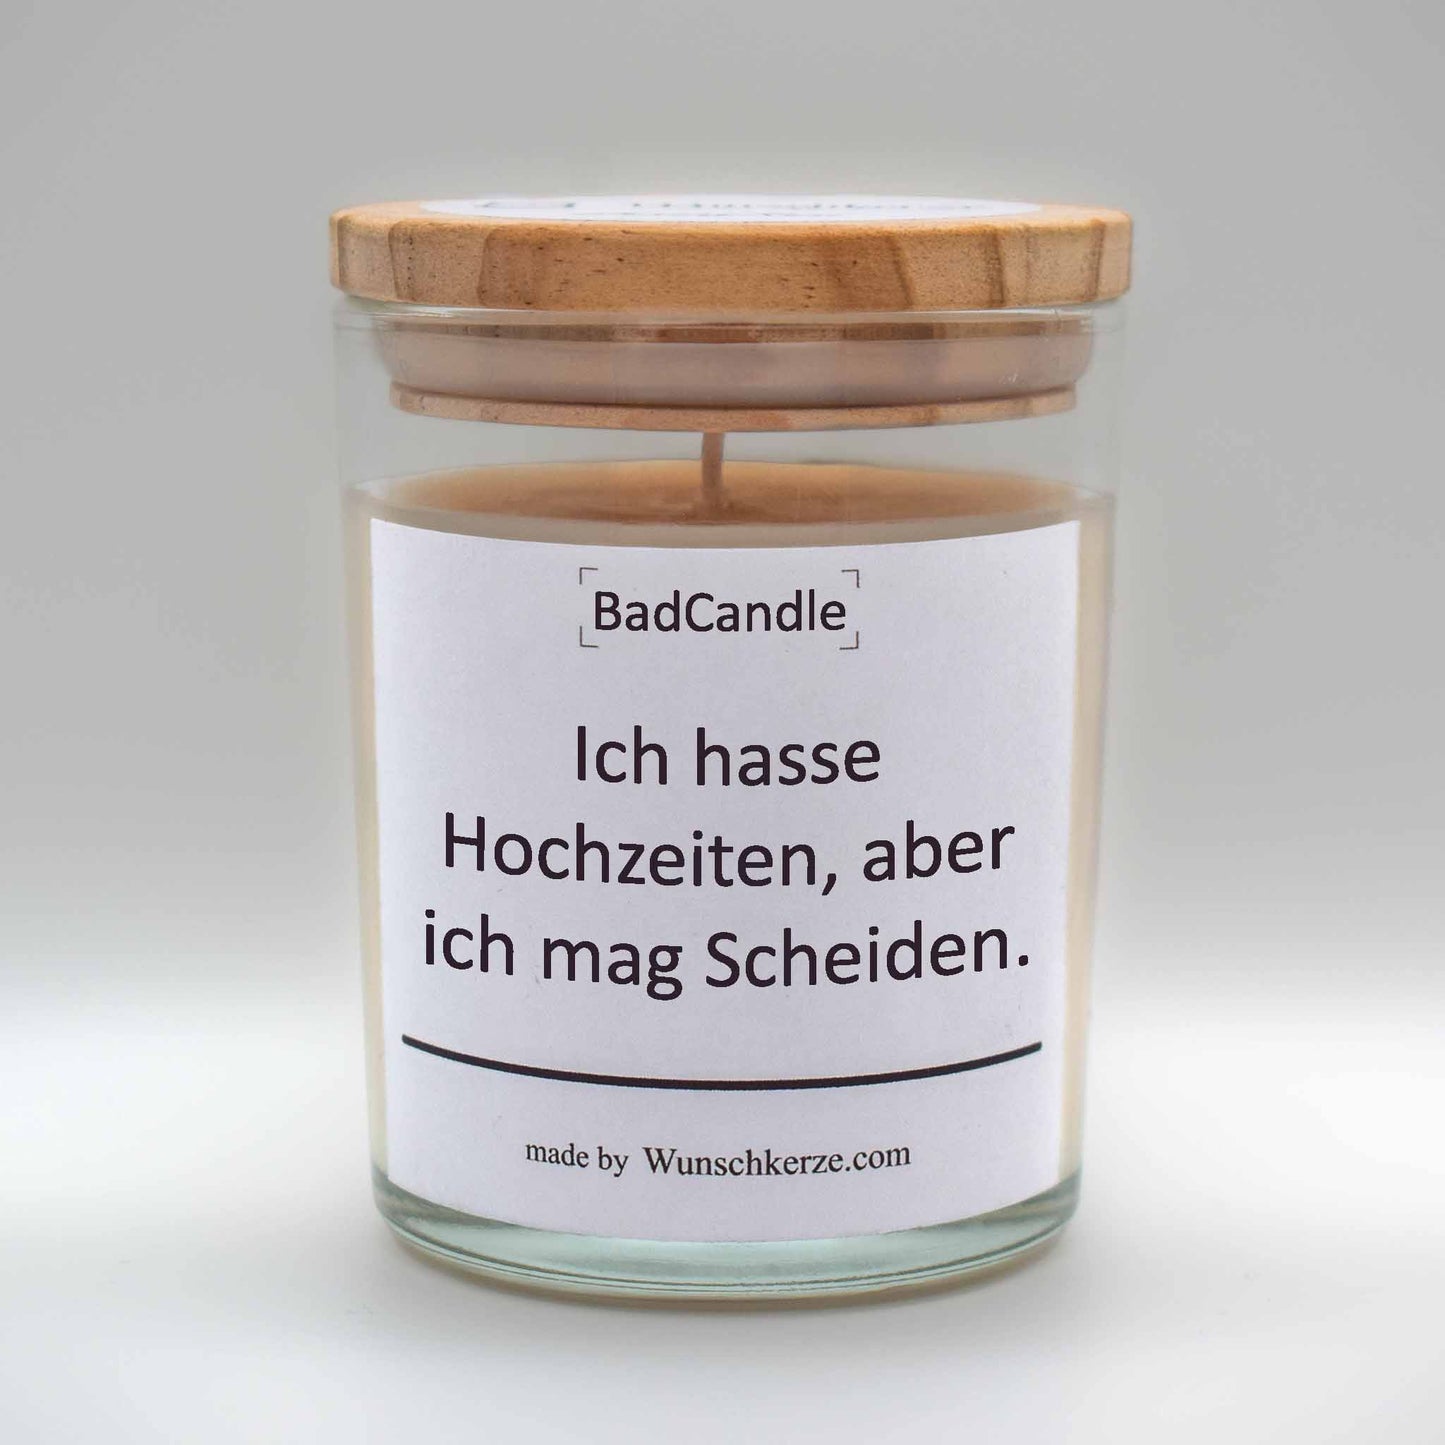 Soja Duftkerze im Glas mit Deckel aus Kiefernholz mit einem Label. Aufschrift: BadCandle - Ich hasse Hochzeiten, aber ich mag Scheiden.